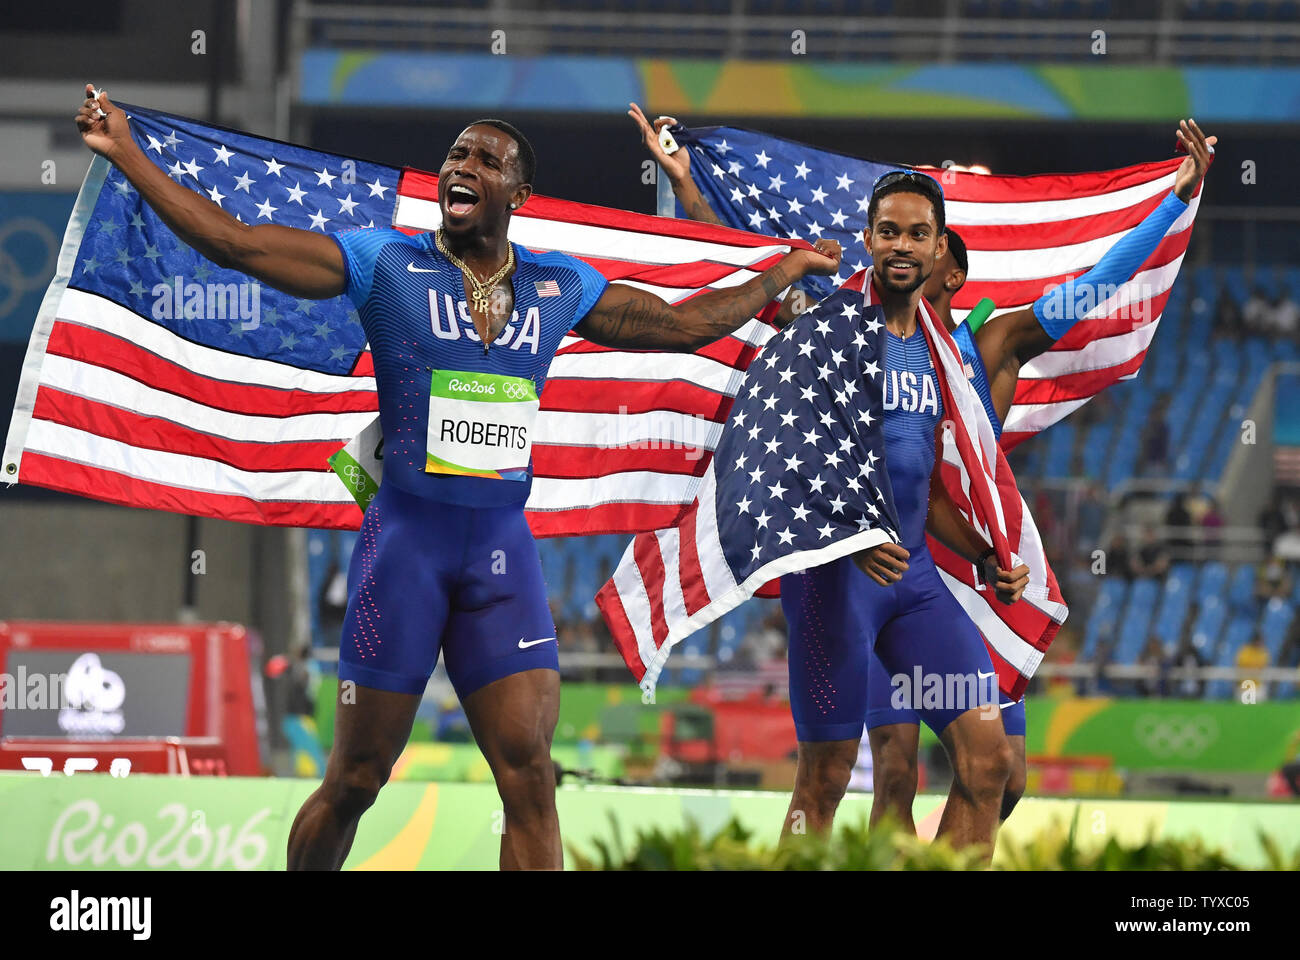 Gil Roberts und Arman Halle der Vereinigten Staaten feiern nach dem Gewinn der Goldmedaille in der Männer 4 x 400 m Relais im Olympischen Stadion am Rio olympische Sommerspiele 2016 in Rio de Janeiro, Brasilien, am 20. August 2016. Foto von Richard Ellis/UPI Stockfoto